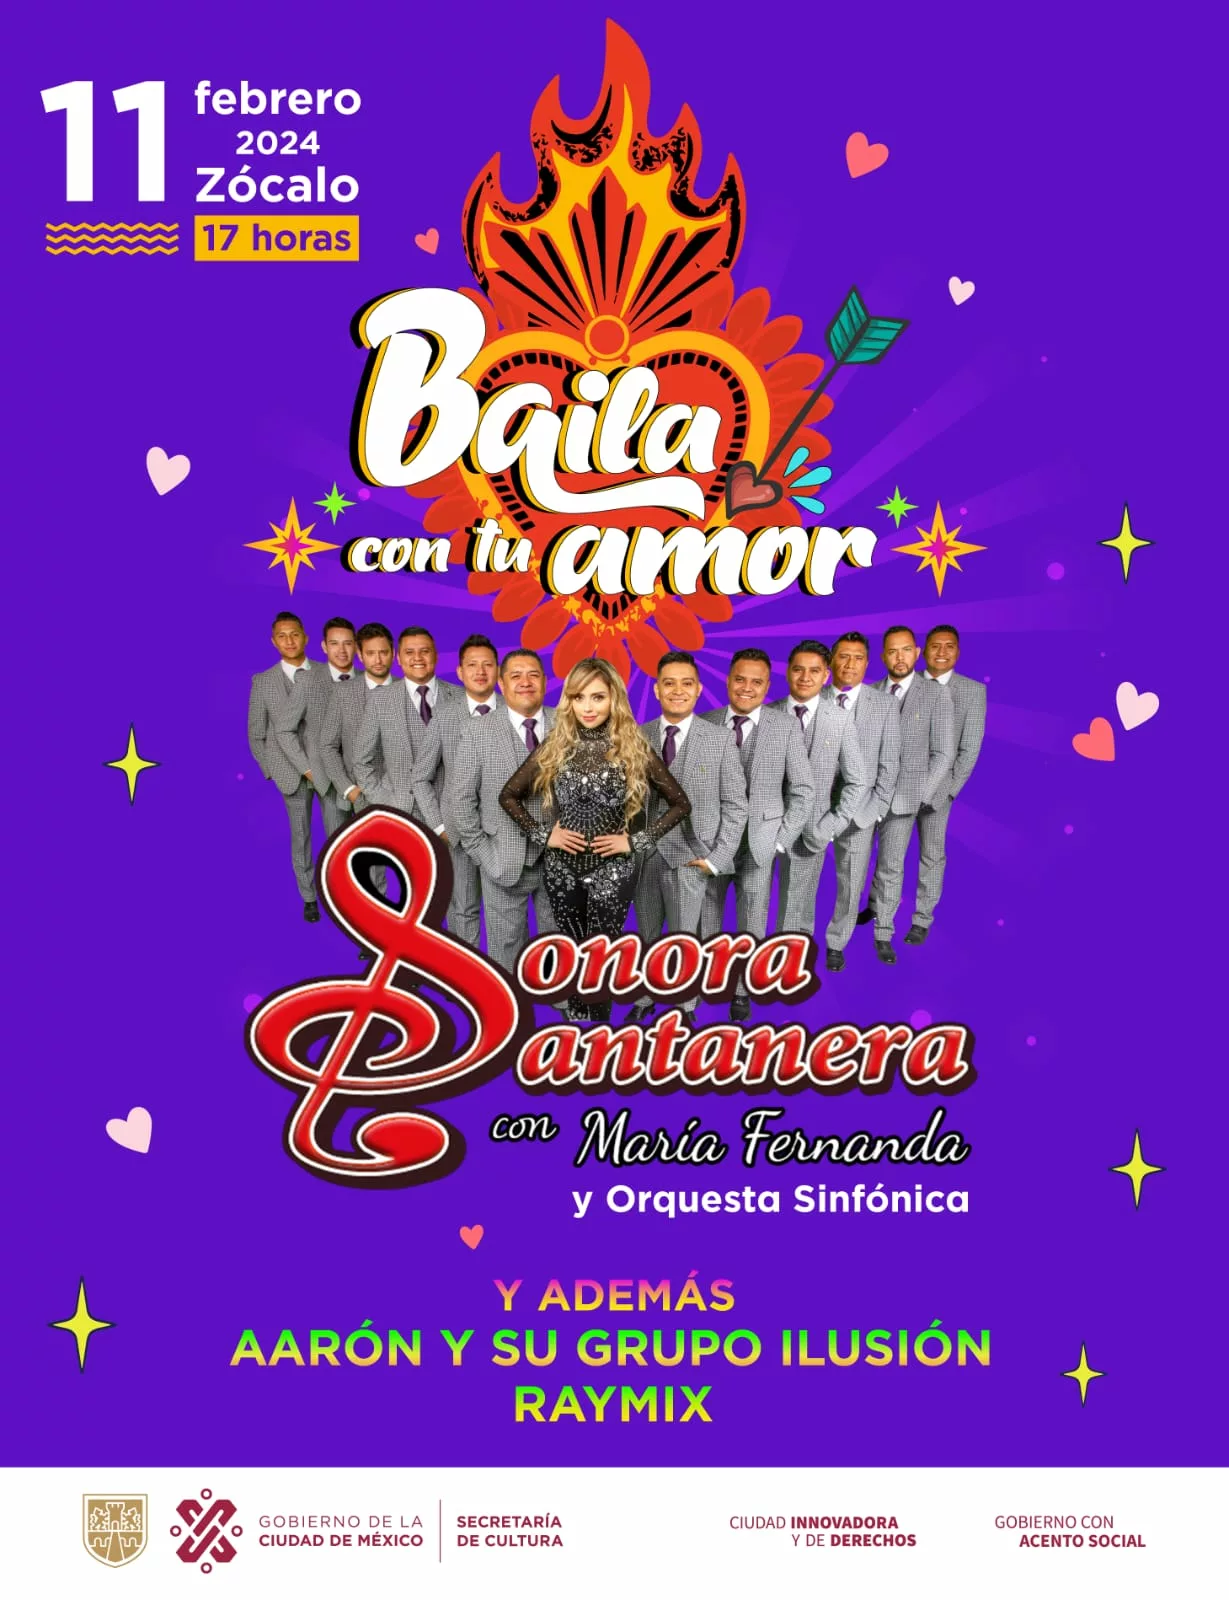 La Sonora Santanera, Aarón y su Grupo Ilusión y Raymix realizarán concierto en el Zócalo de la CDMX 